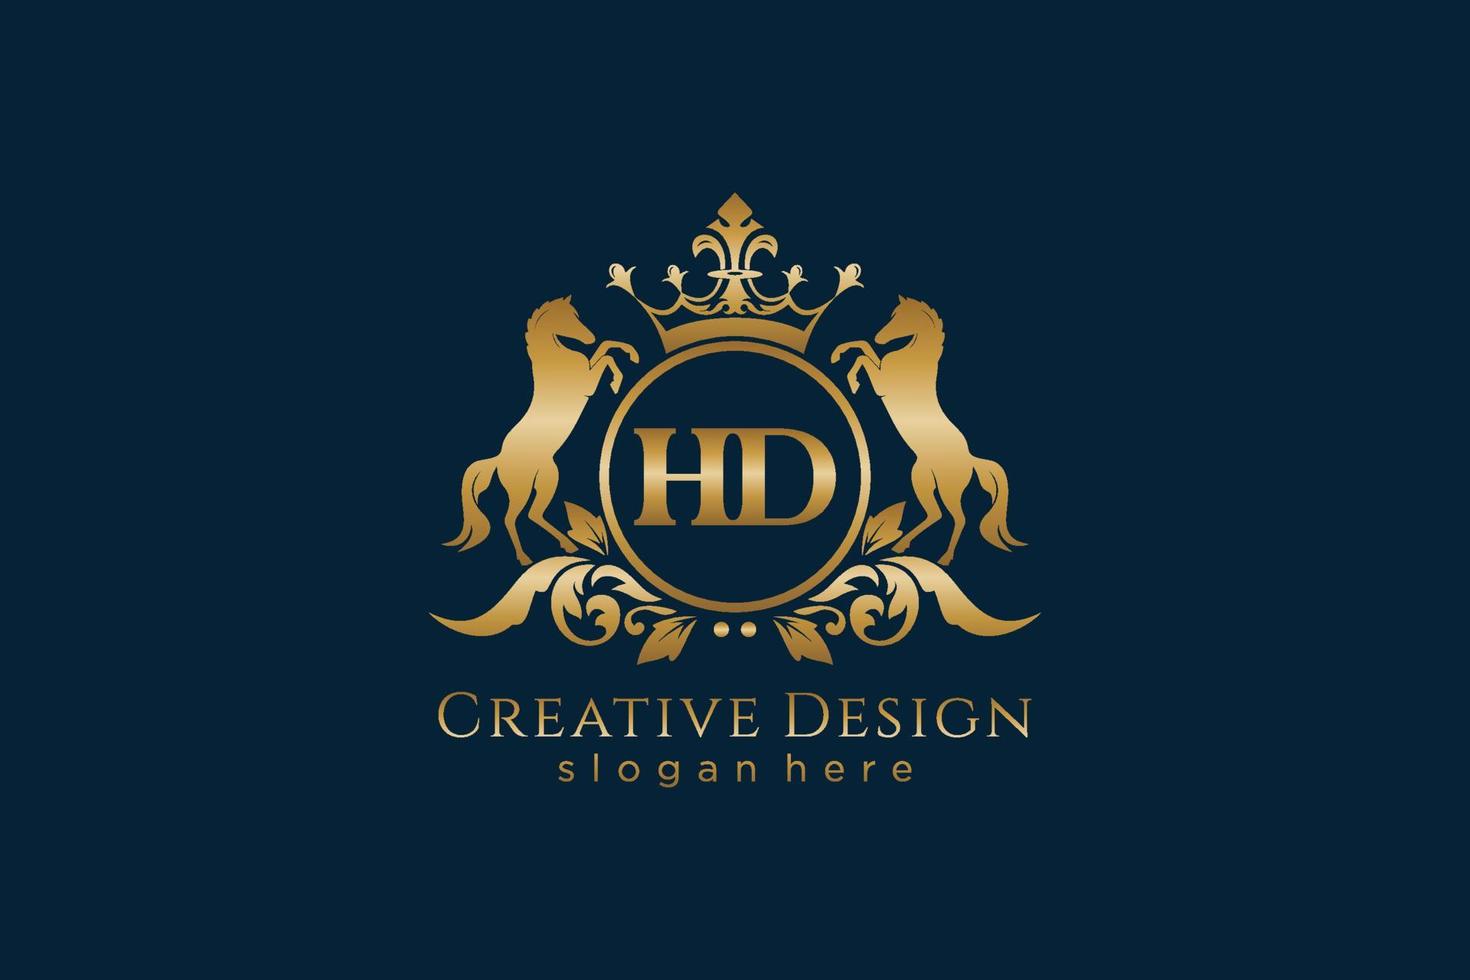 crista dourada retro hd inicial com círculo e dois cavalos, modelo de crachá com pergaminhos e coroa real - perfeito para projetos de marca luxuosos vetor